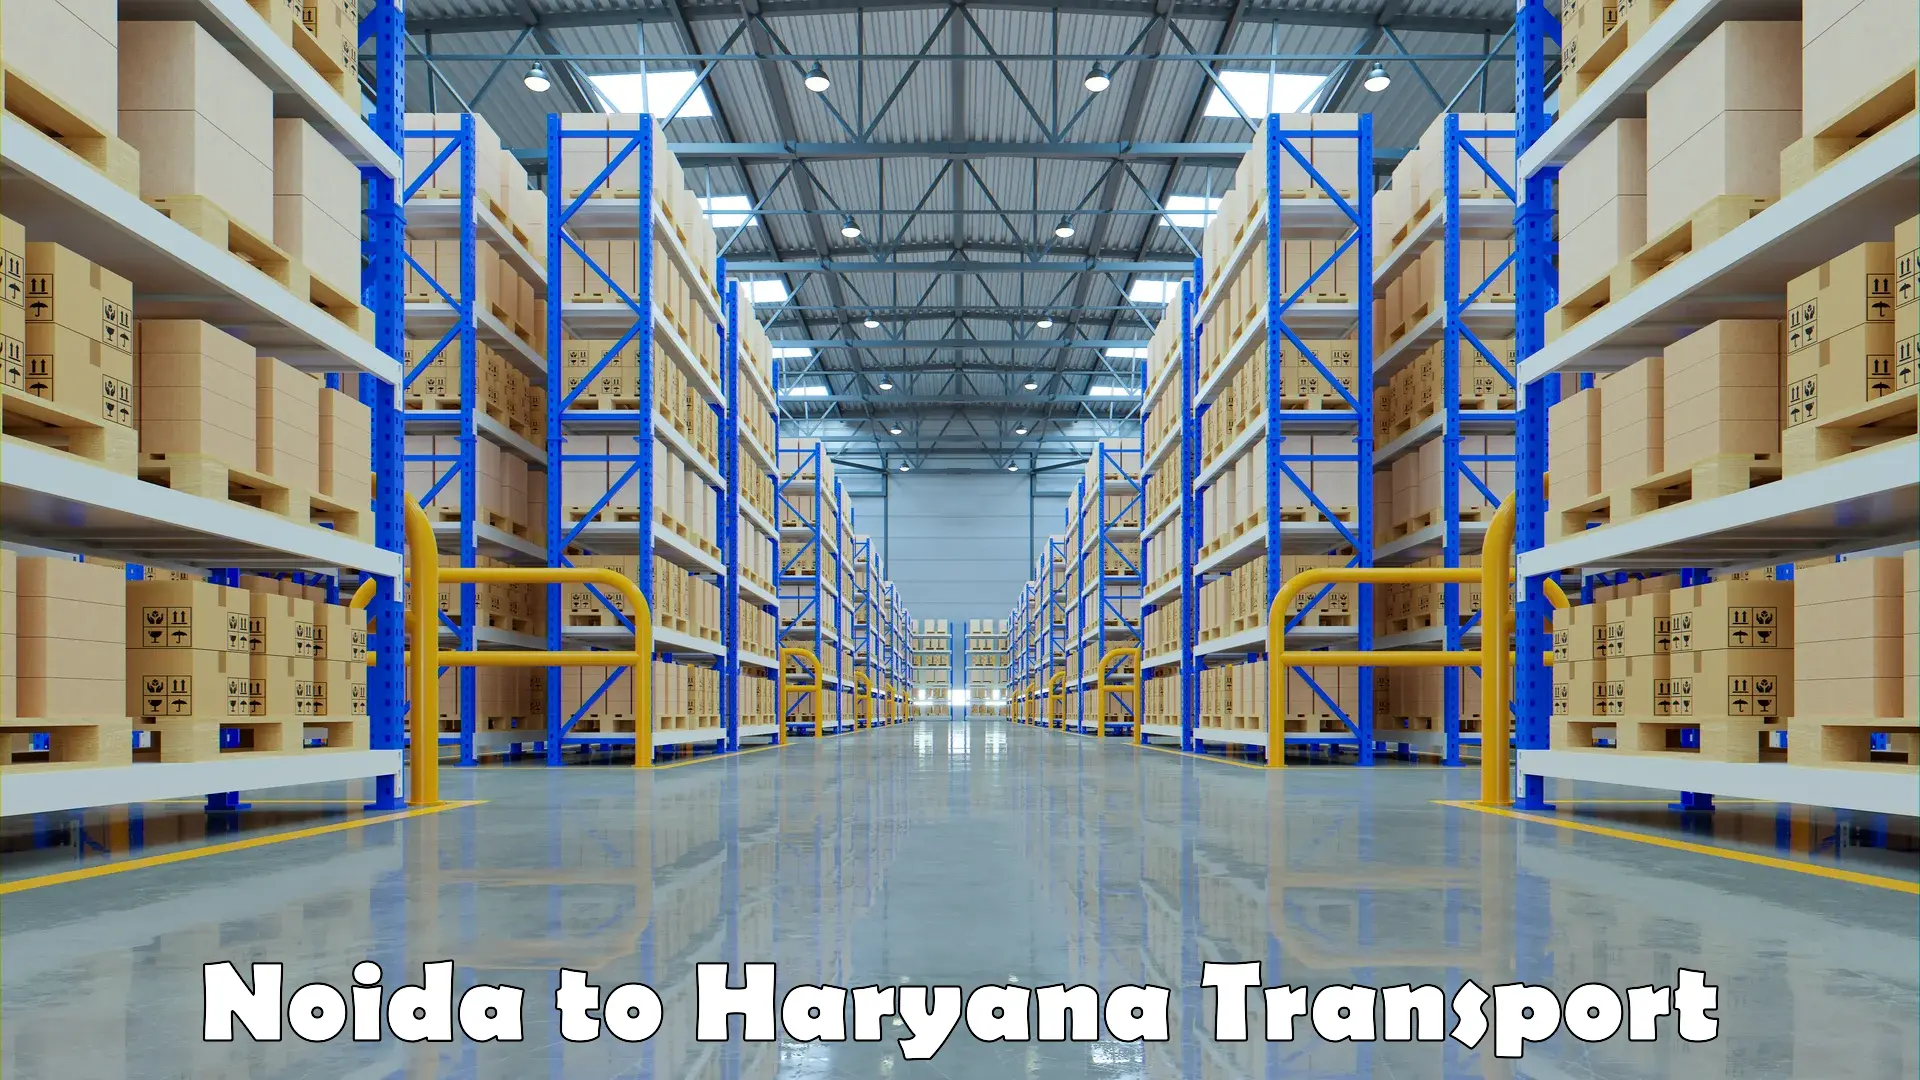 Daily transport service Noida to Haryana